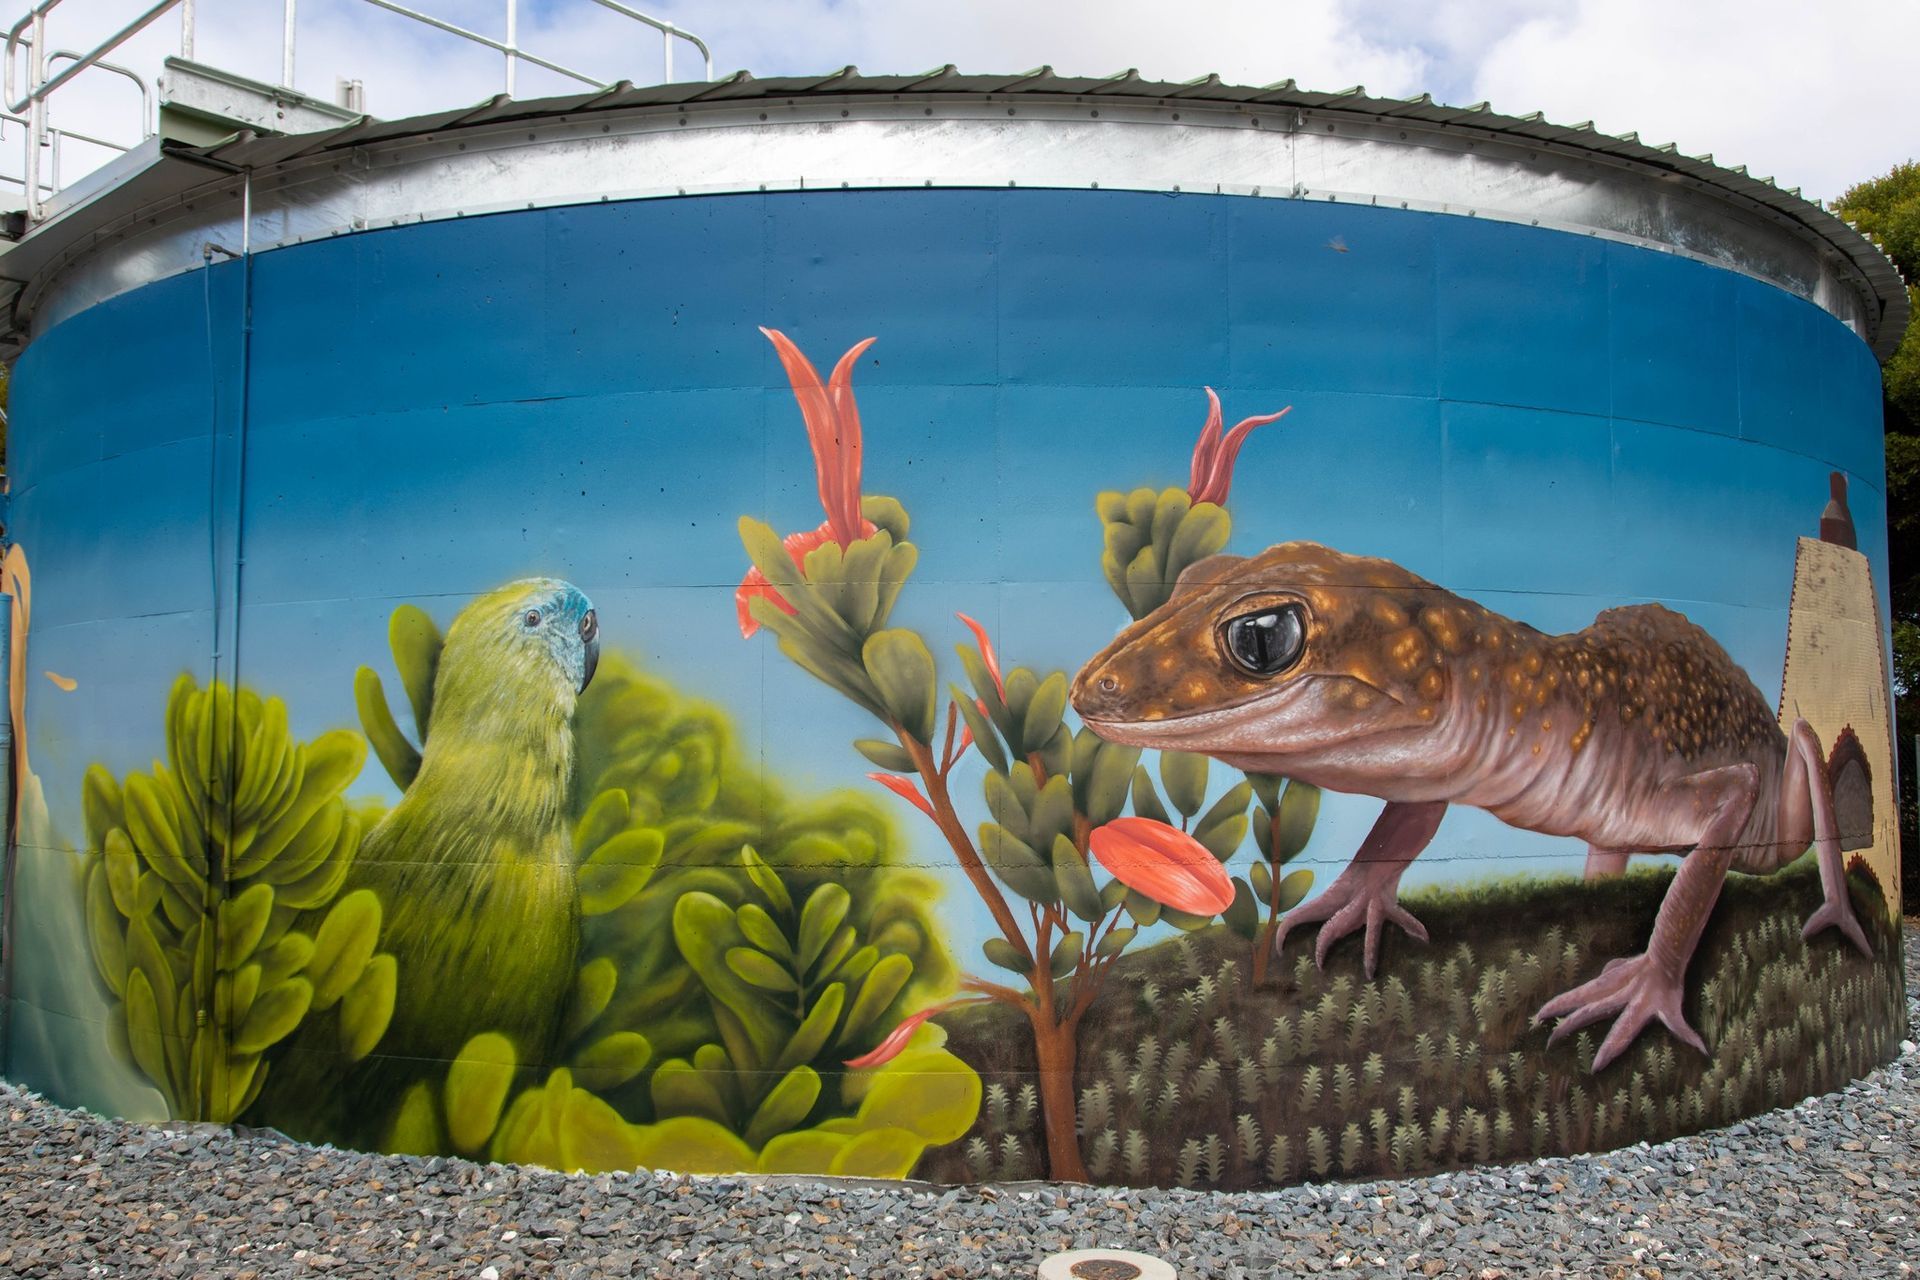 Port Moorowie Water Tank Art, Australian Silo Art trail